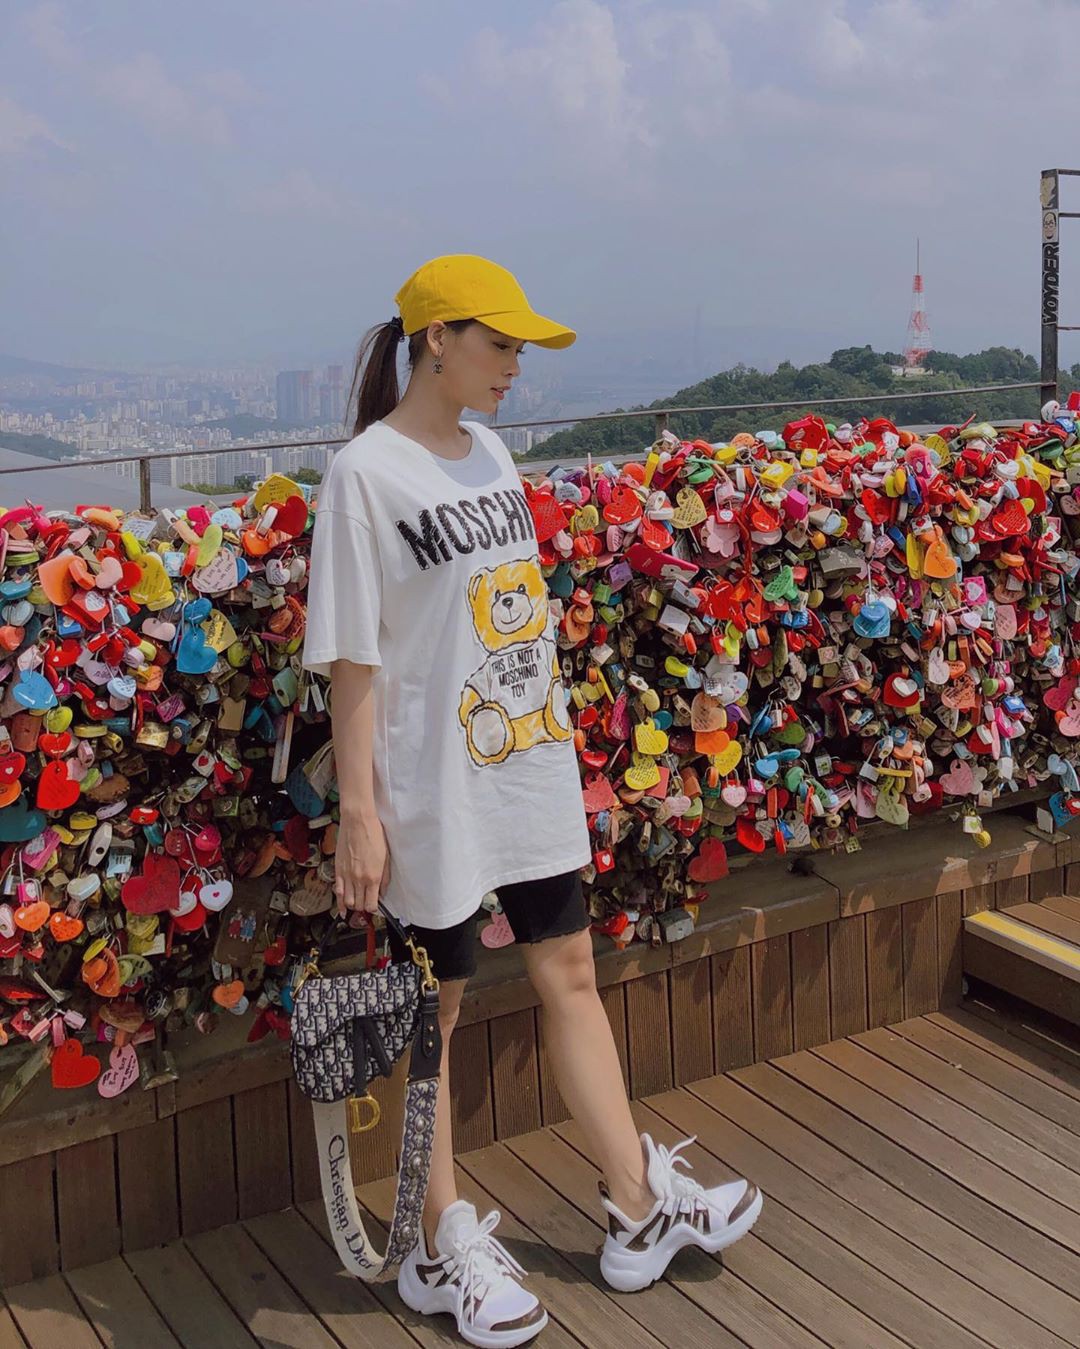 Sam trẻ trung tại Hàn Quốc với cây cầu khóa tình yêu nổi tiếng của xứ sở Kim Chi.